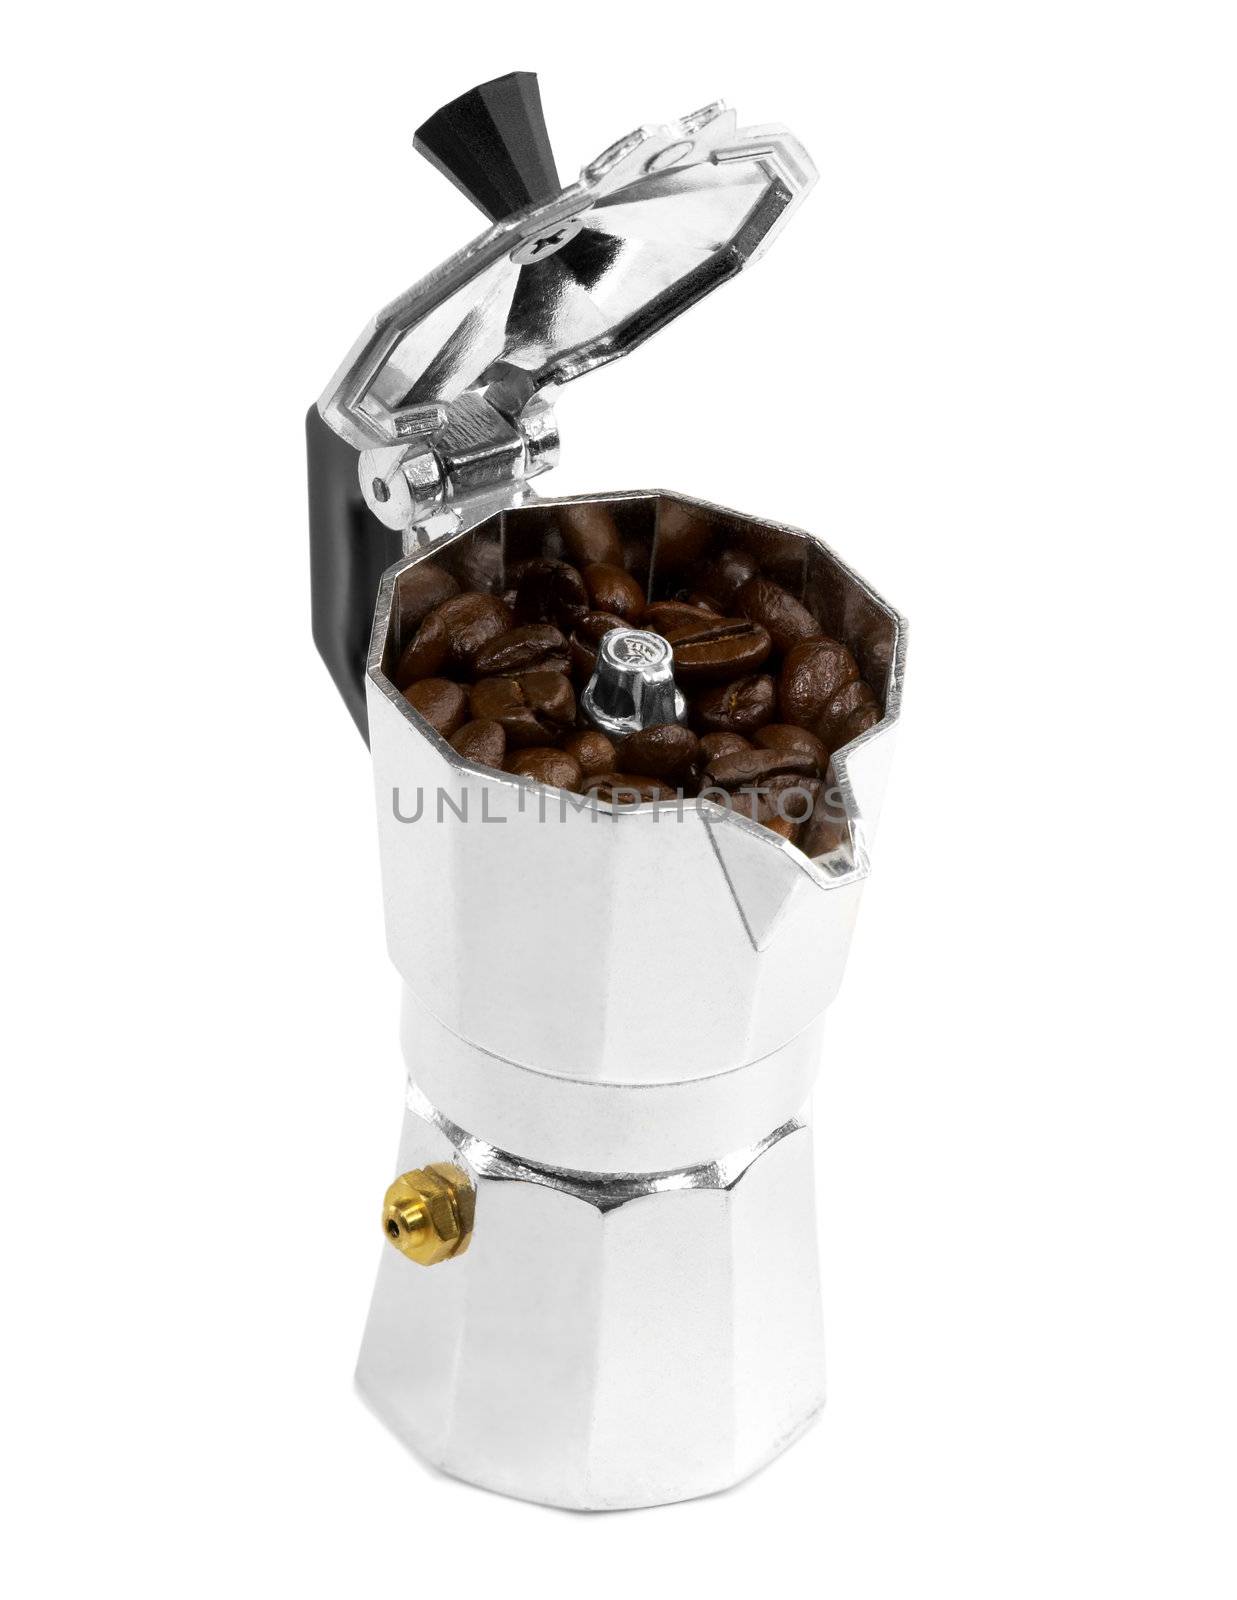 coffee beans and mocha machine by keko64